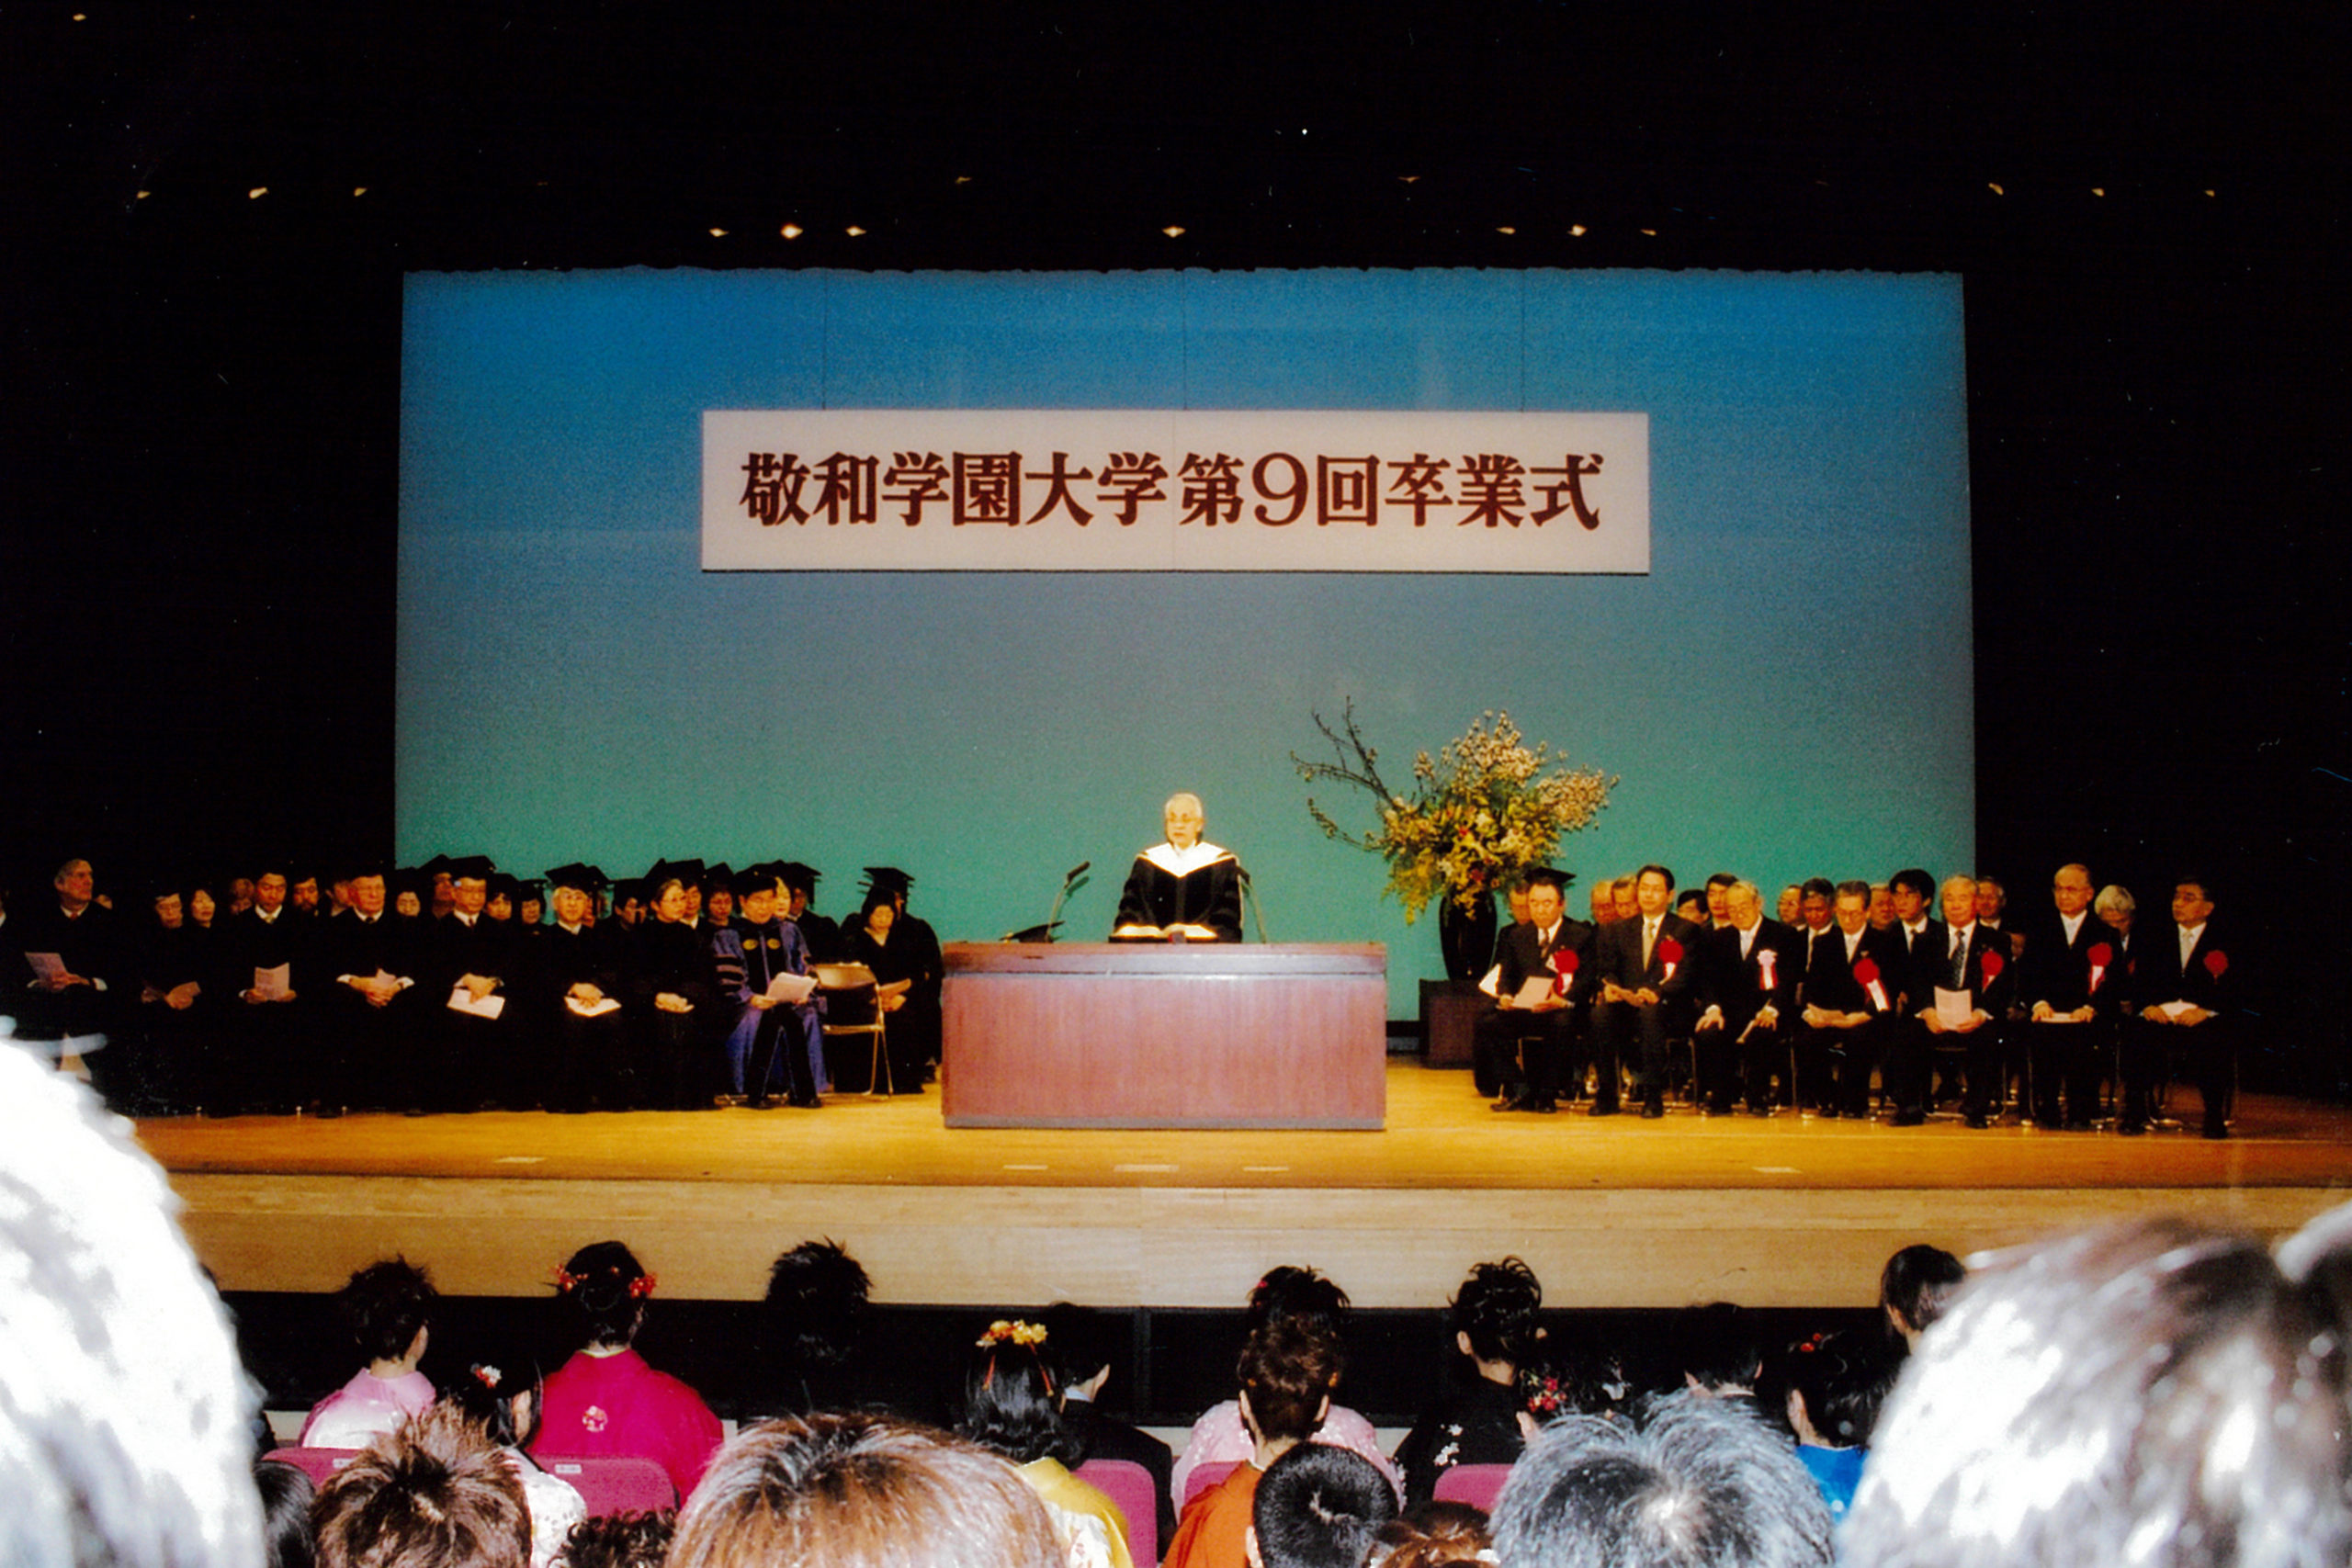 2003年3月20日 卒業式での北垣宗治初代学長による式辞